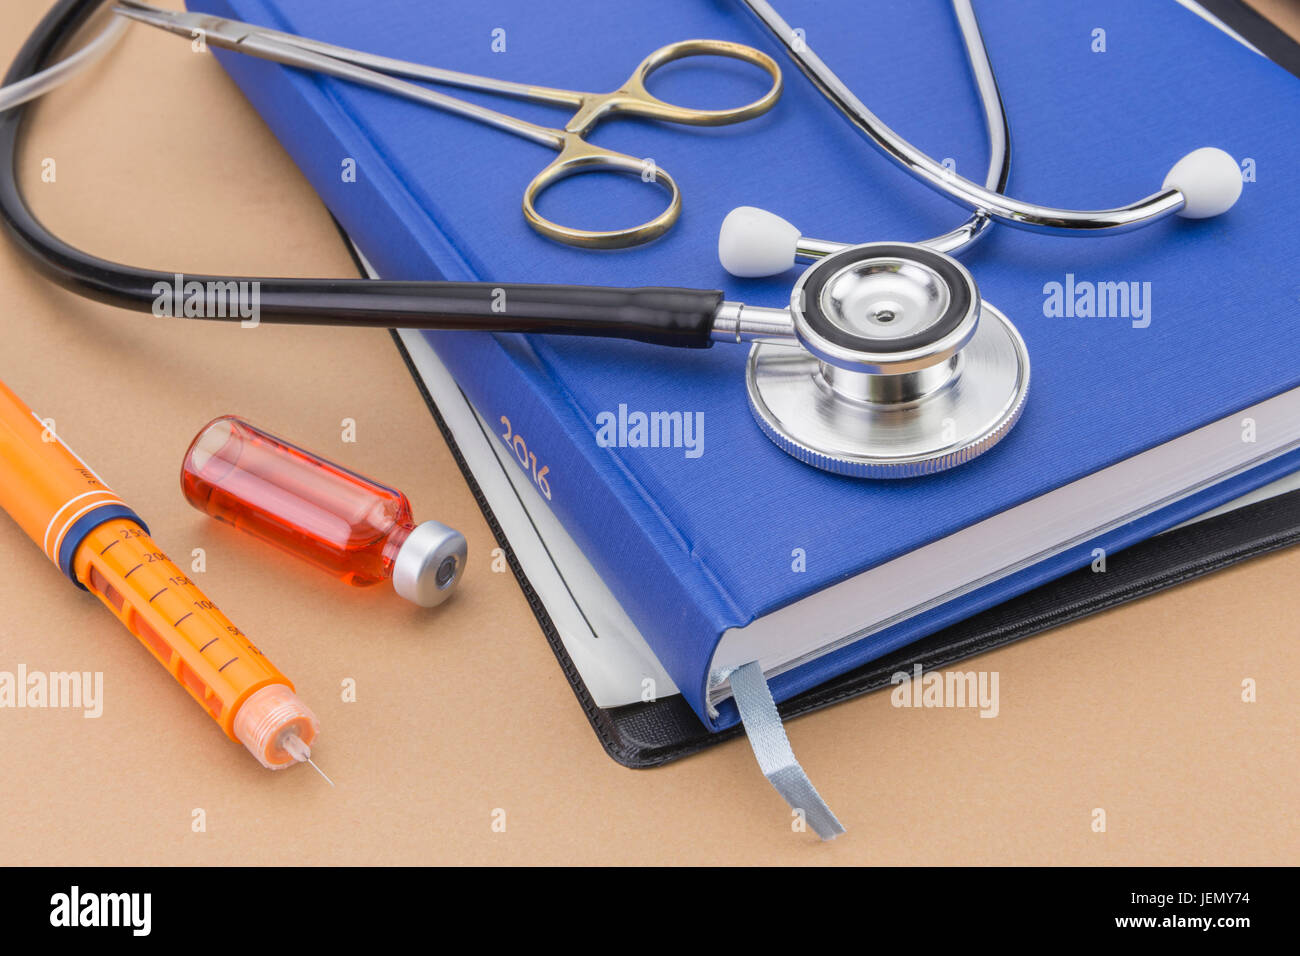 L'injection d'insuline stylo et stéthoscope, notion de diabète Banque D'Images